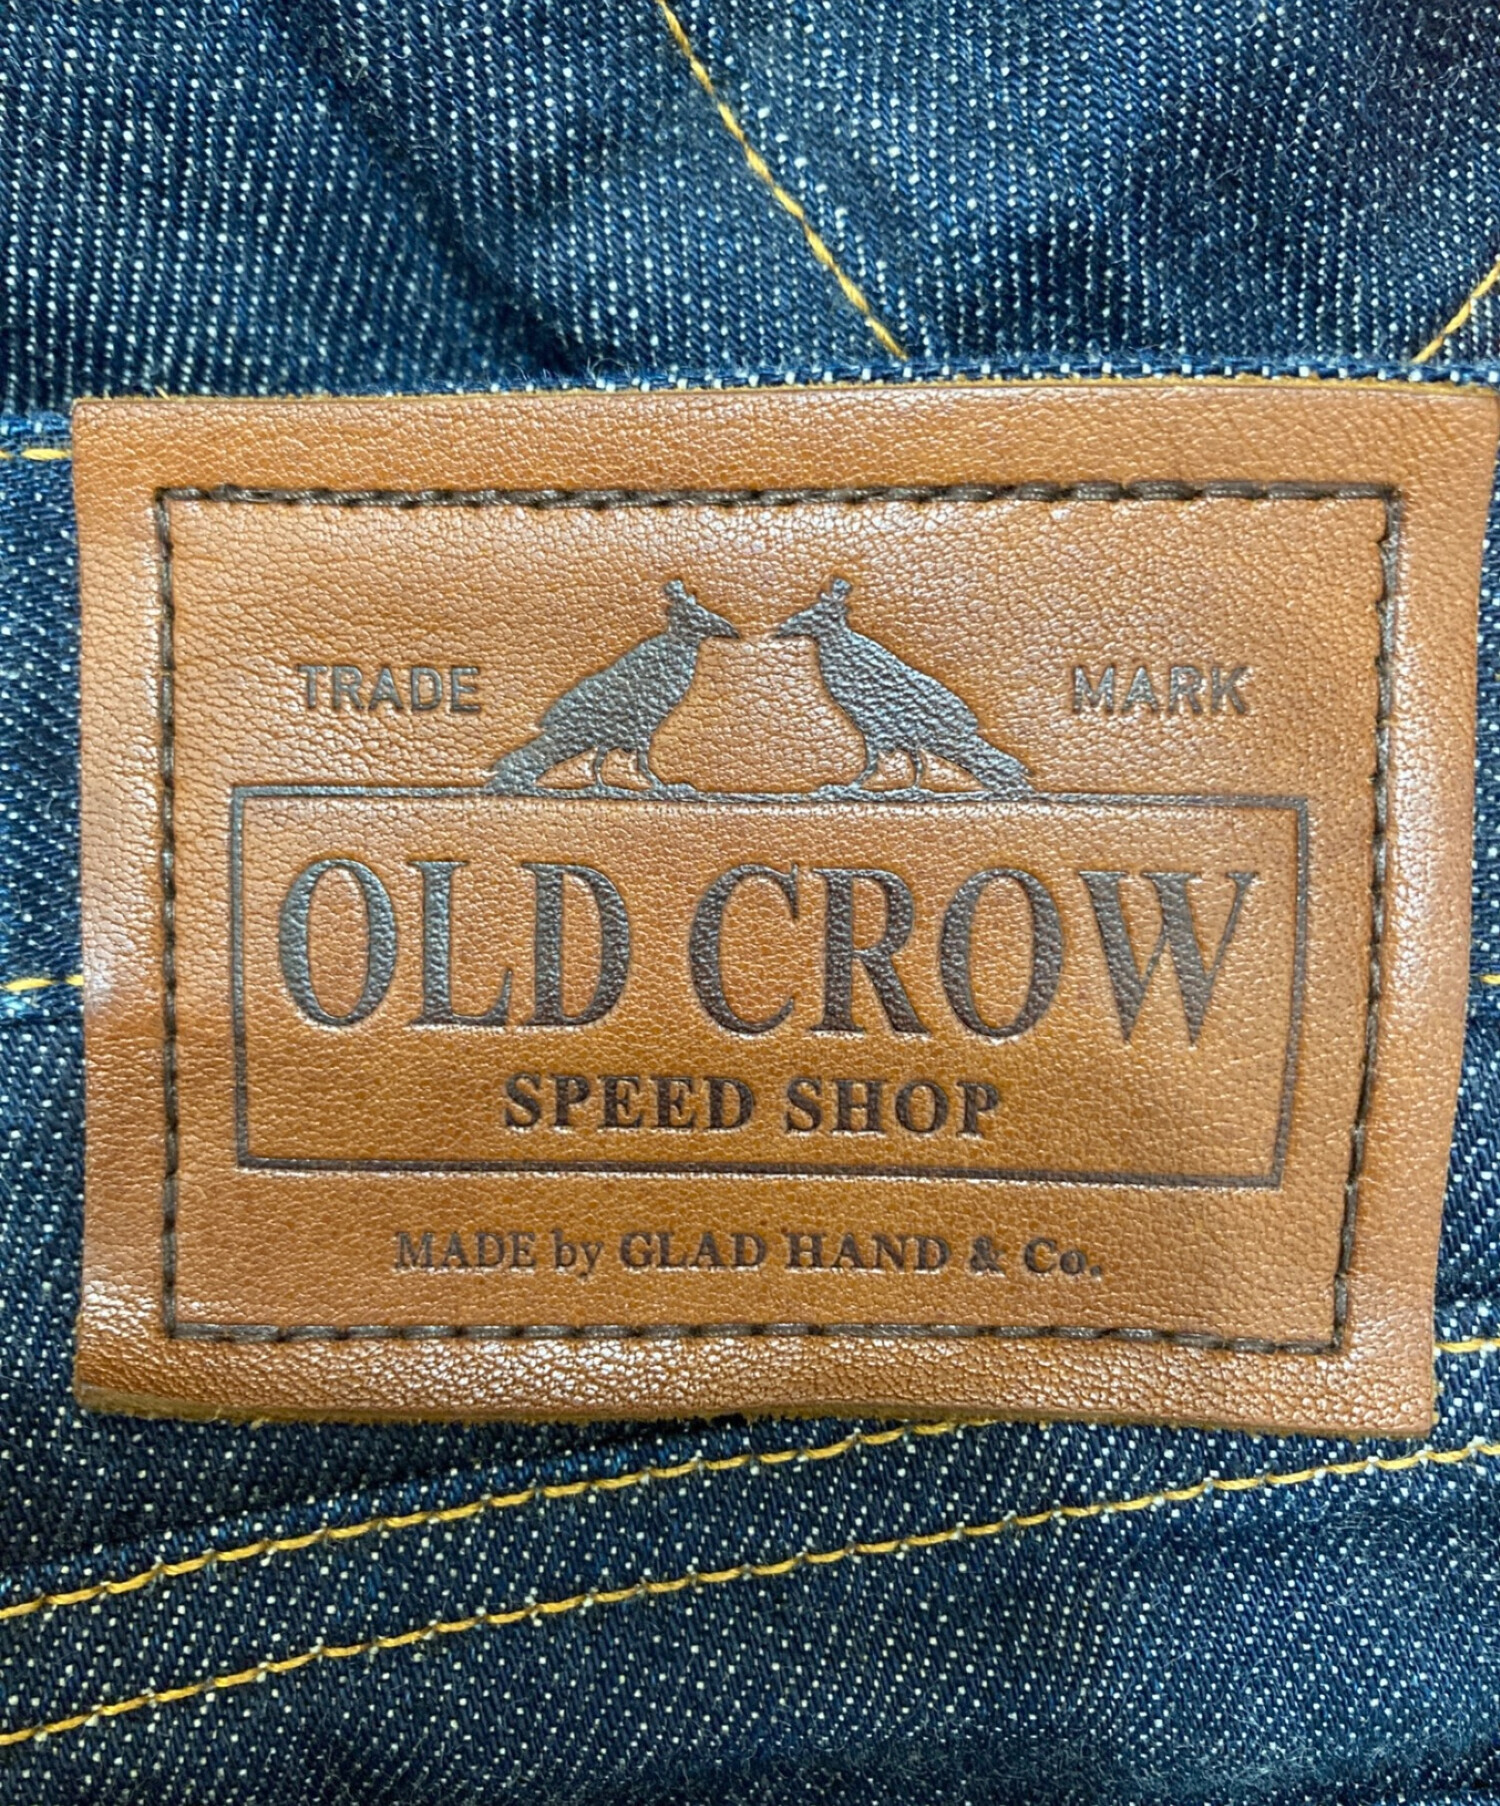 OLD CROW (オールドクロウ) リジットデニム サイズ:S